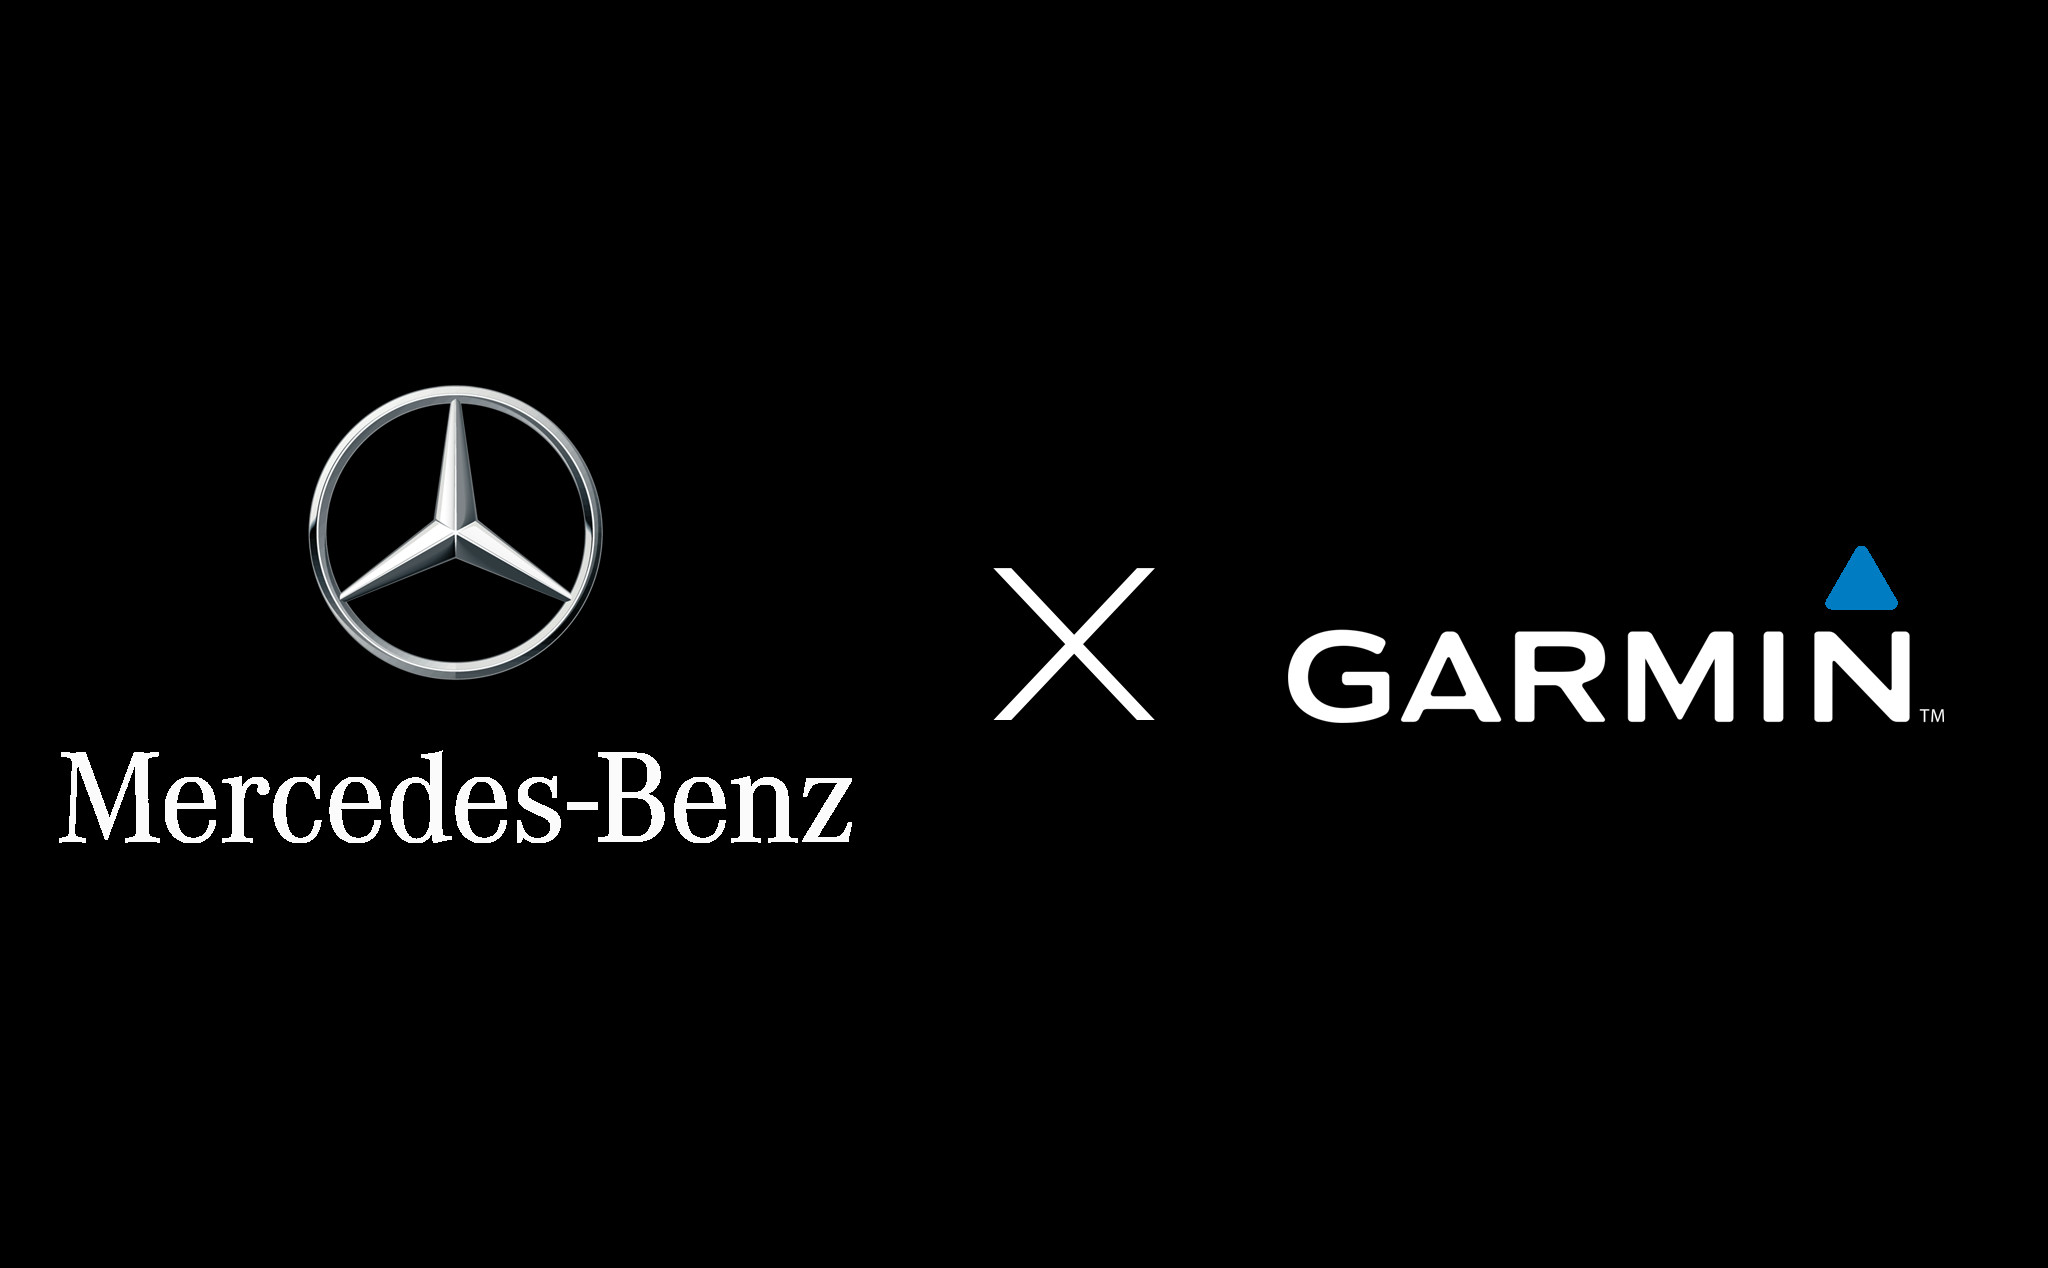 Daimler AG hợp tác với Garmin, tương lai mang công nghệ theo dõi sức khoẻ lên xe Mercedes-Benz